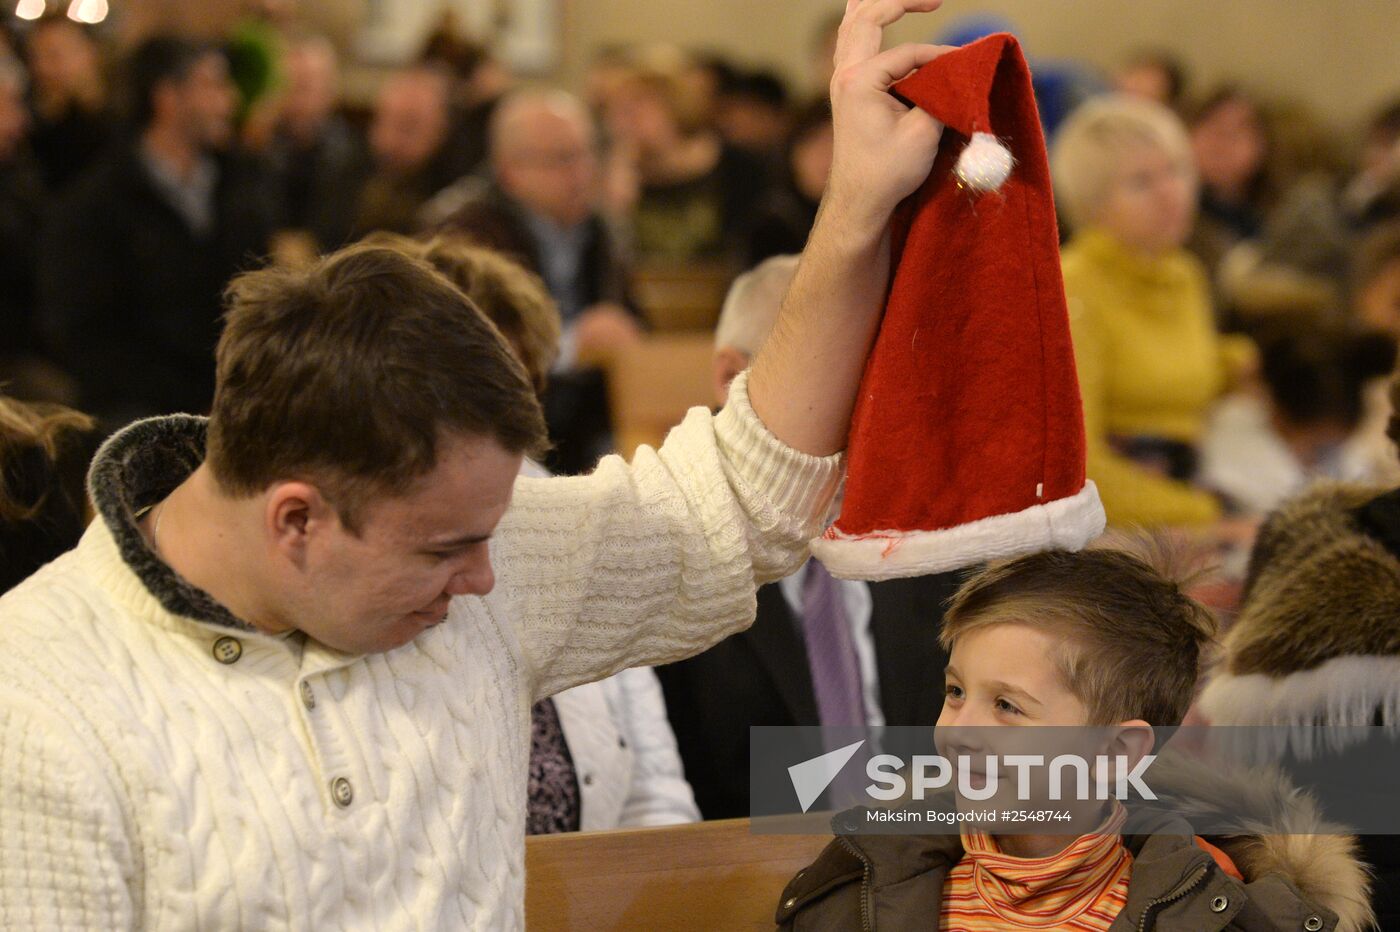 Catholic Christmas celebrated in Kazan